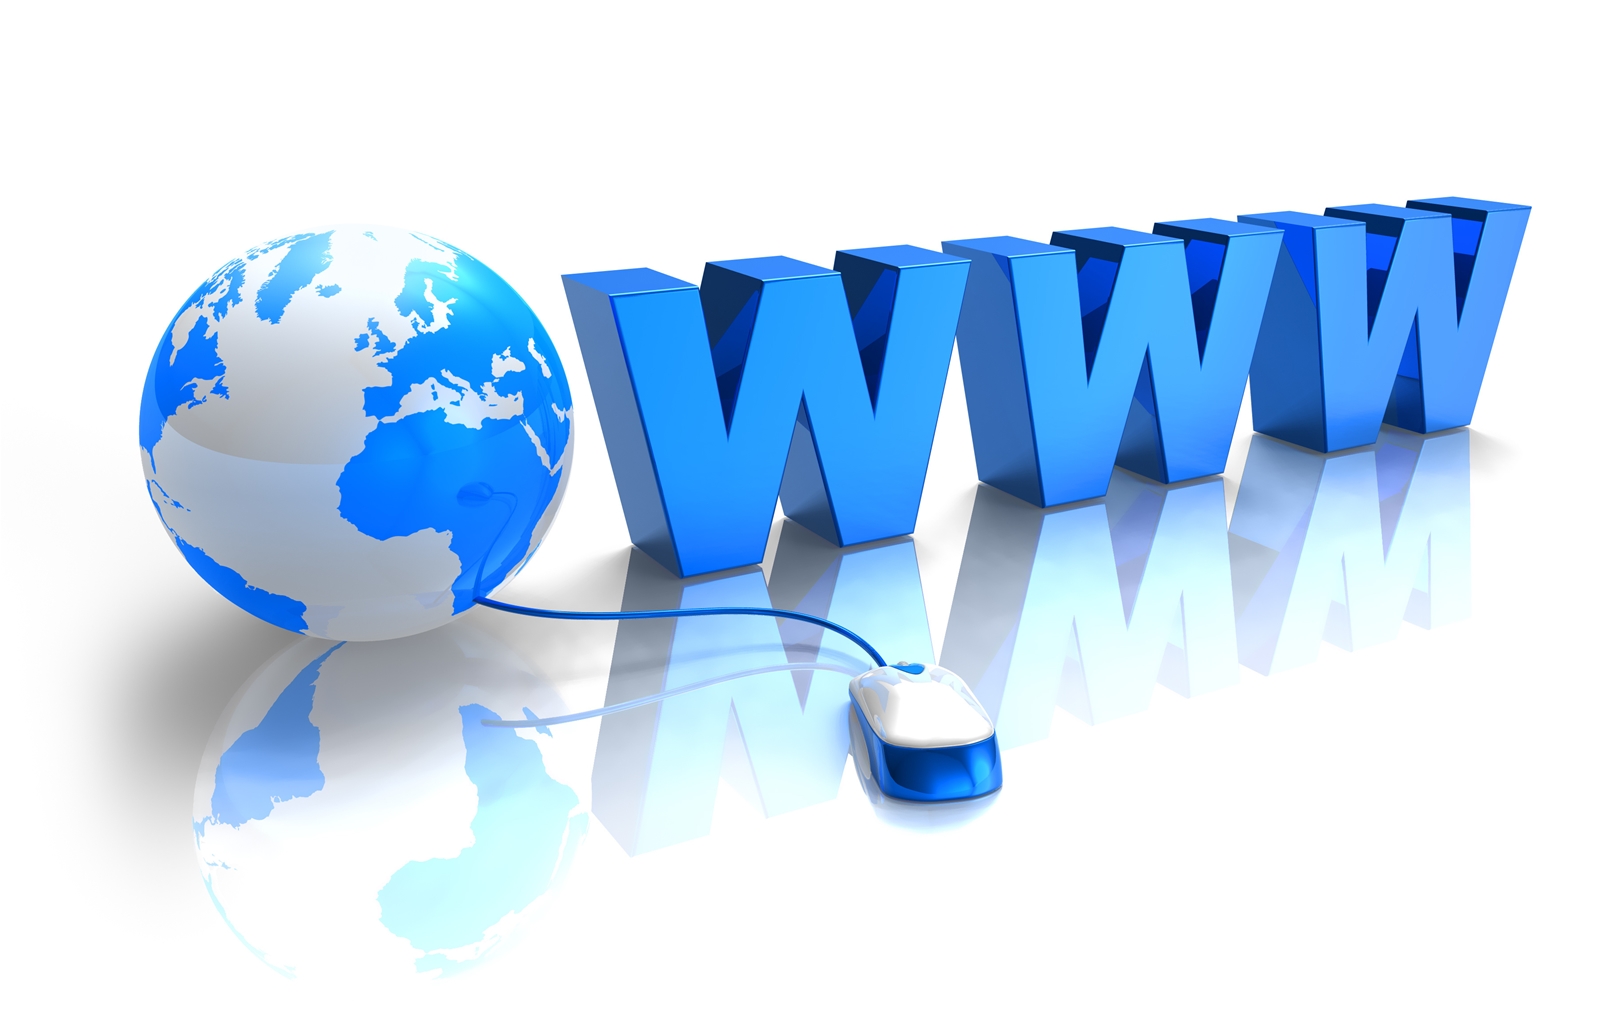 Quy định của pháp luật về xin giấy phép website, hoạt động cổng thông tin điện tử.